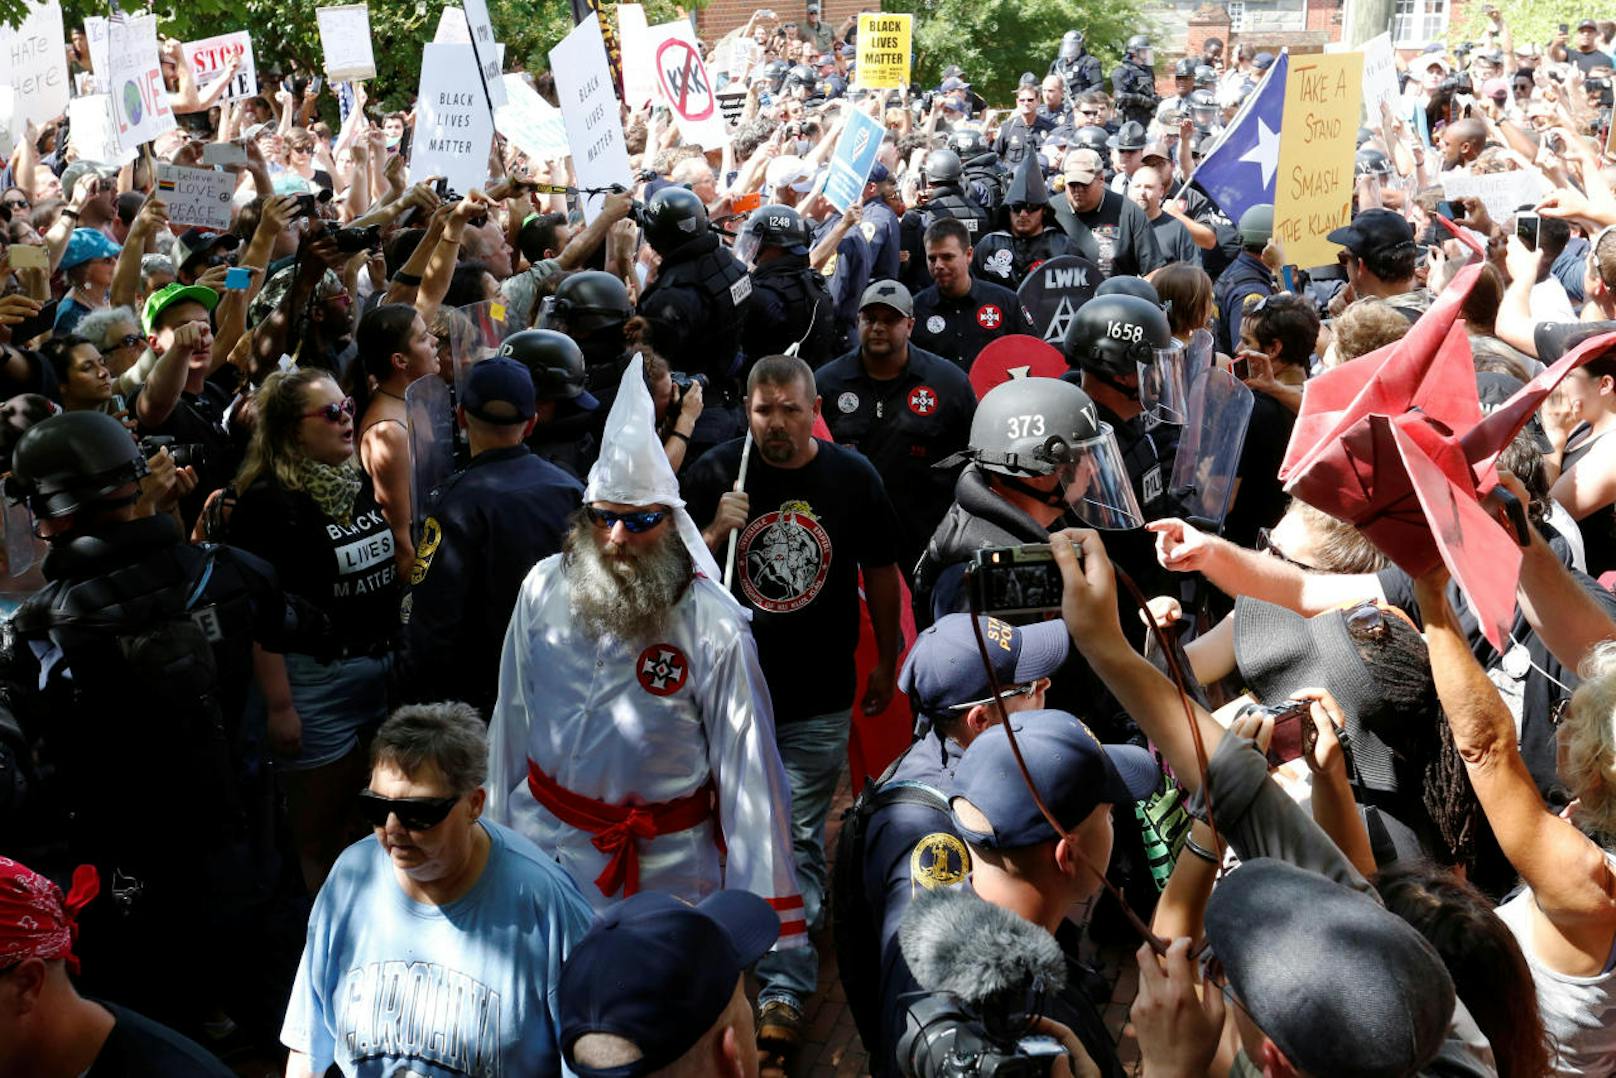 In den USA findet eine Großdemonstration von rechtsextremen und rassistischen Gruppen statt. Es kommt zu Auseinandersetzungen.